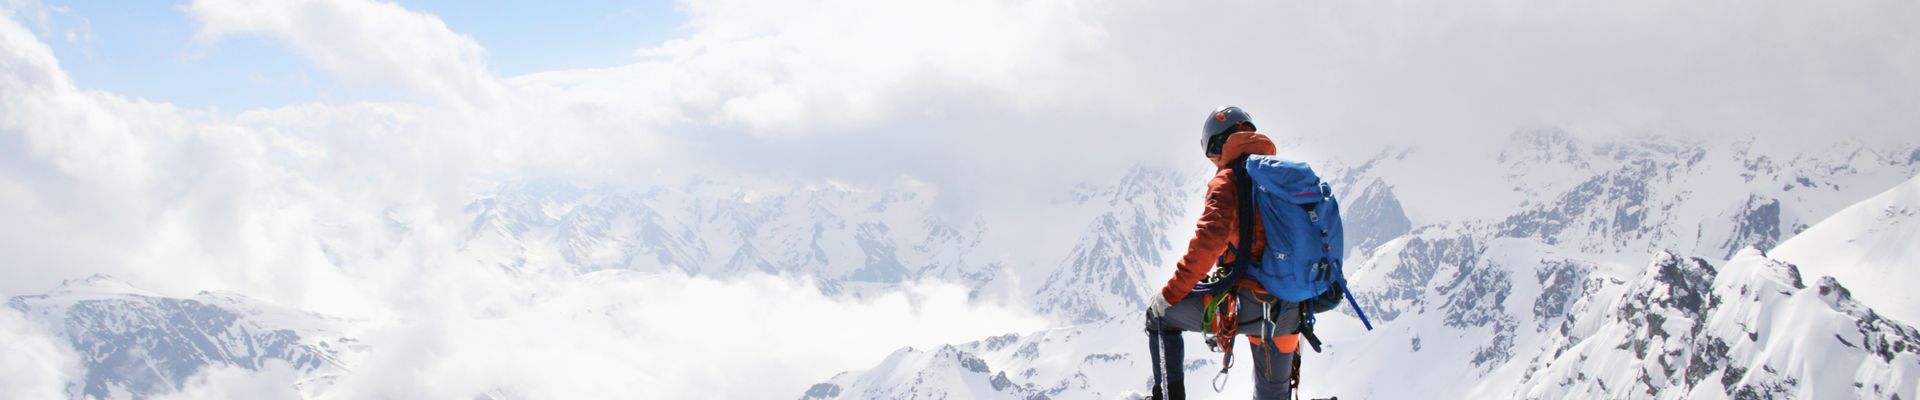 Ein Bergsteiger steht in voller Montur auf dem Berggipfel und schaut über die verschneiten Wipfel.